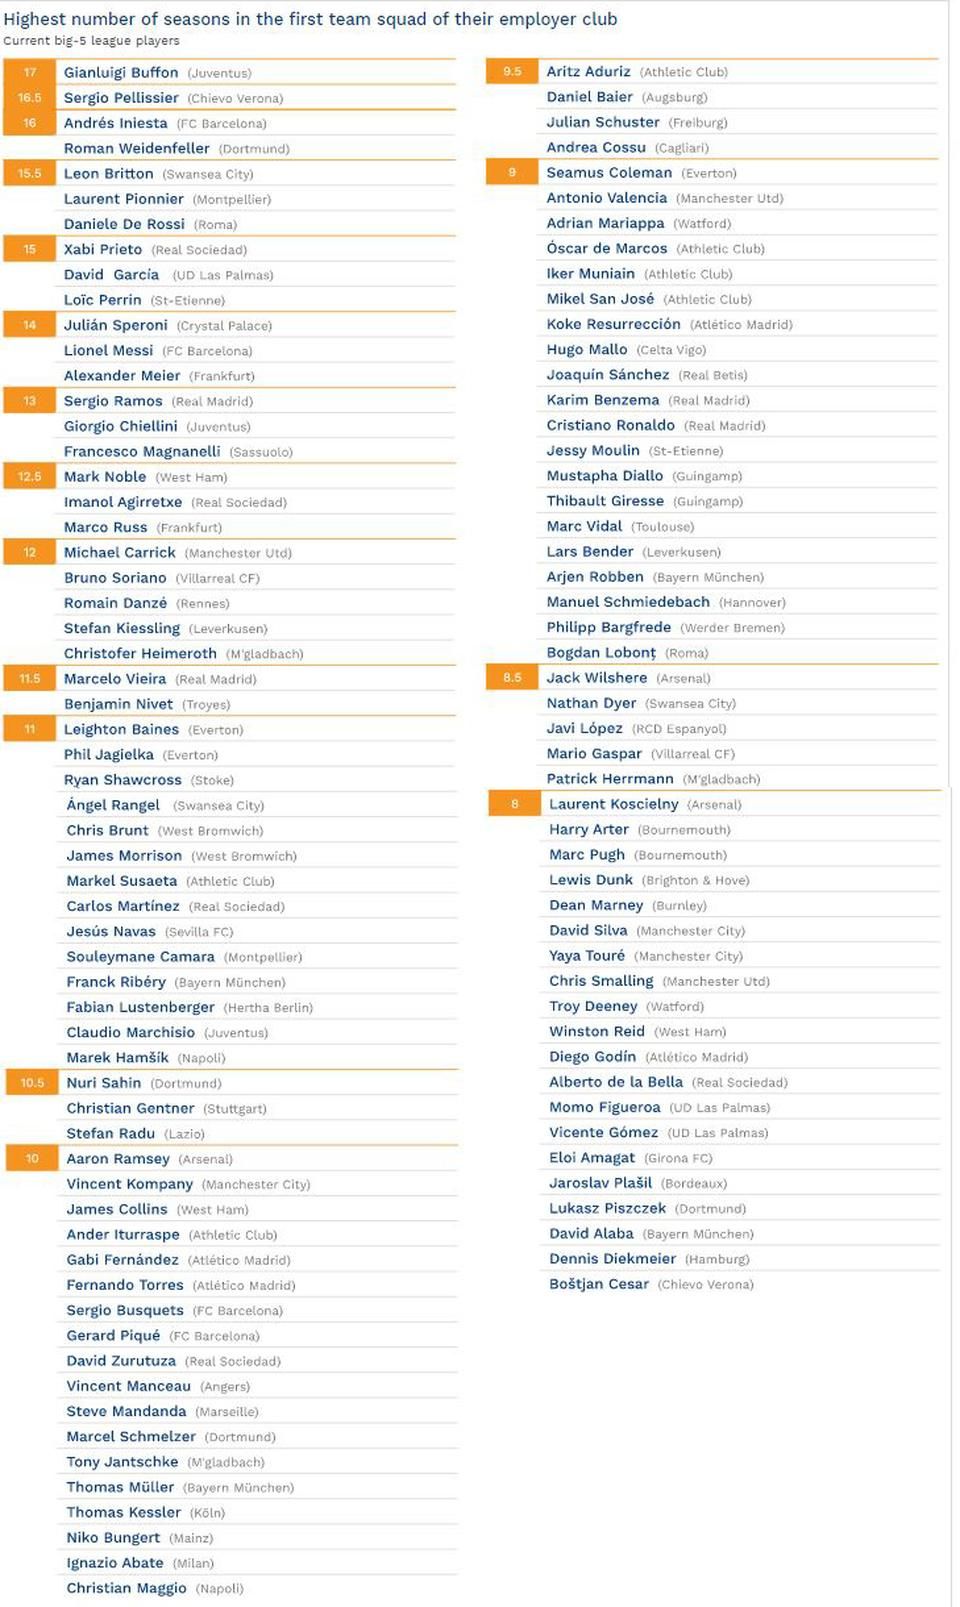 A csapatok színeiben legtöbb szezonnal bíró játékosok listája (Forrás: CIES)